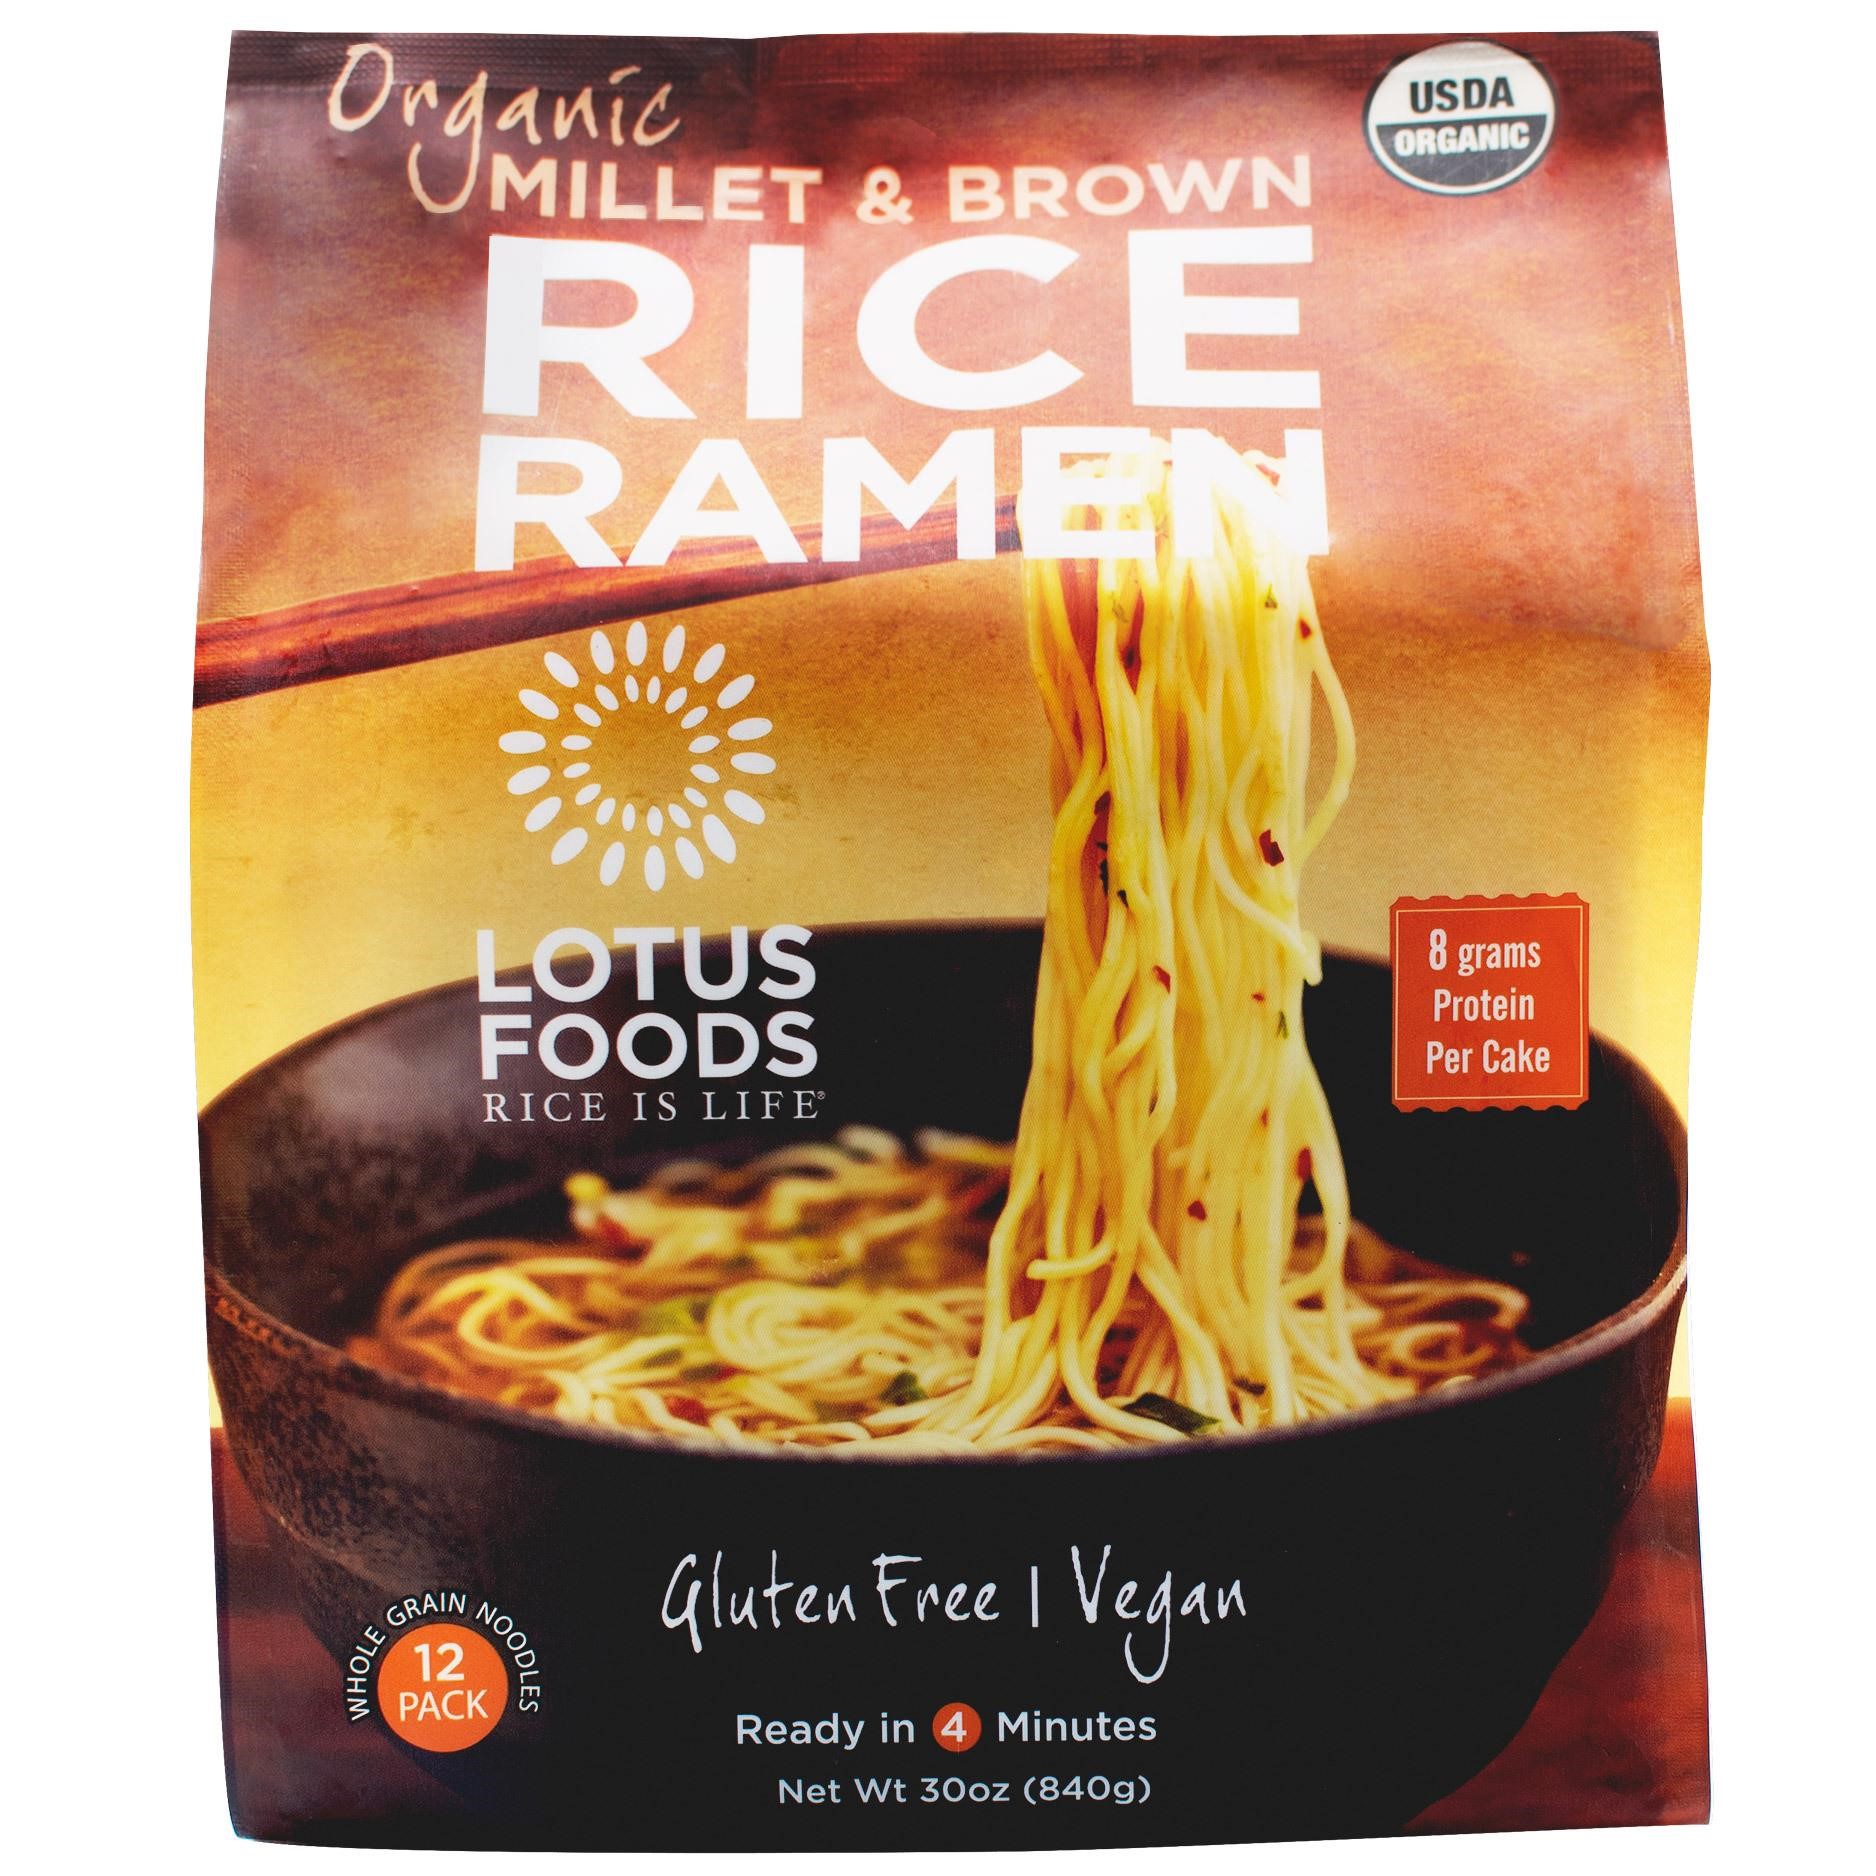 Lotus Foods Organic Millet Rice Ramen, 12 ct